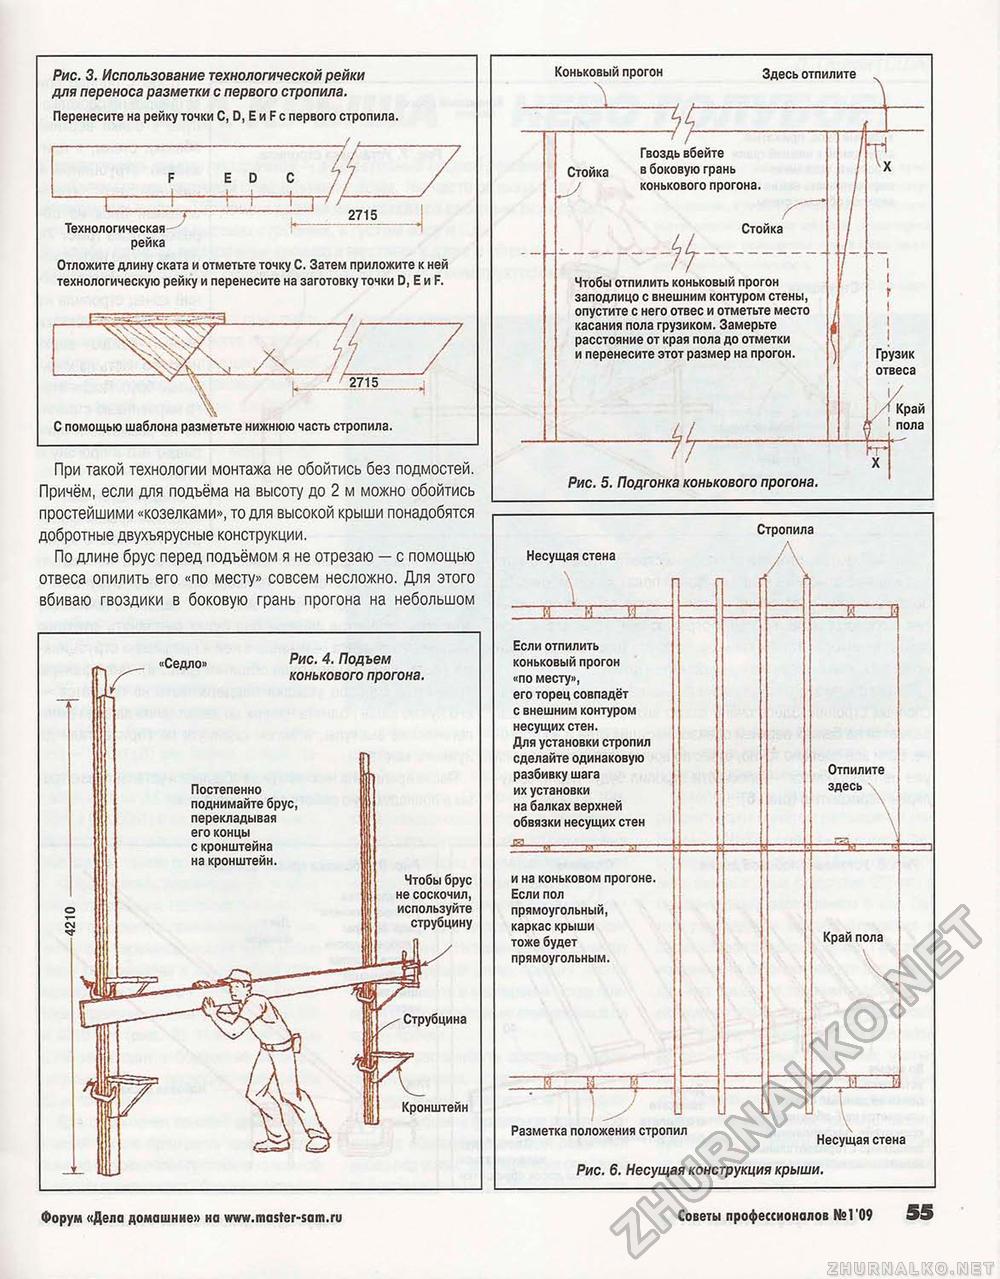 Советы профессионалов 2009-01, страница 55